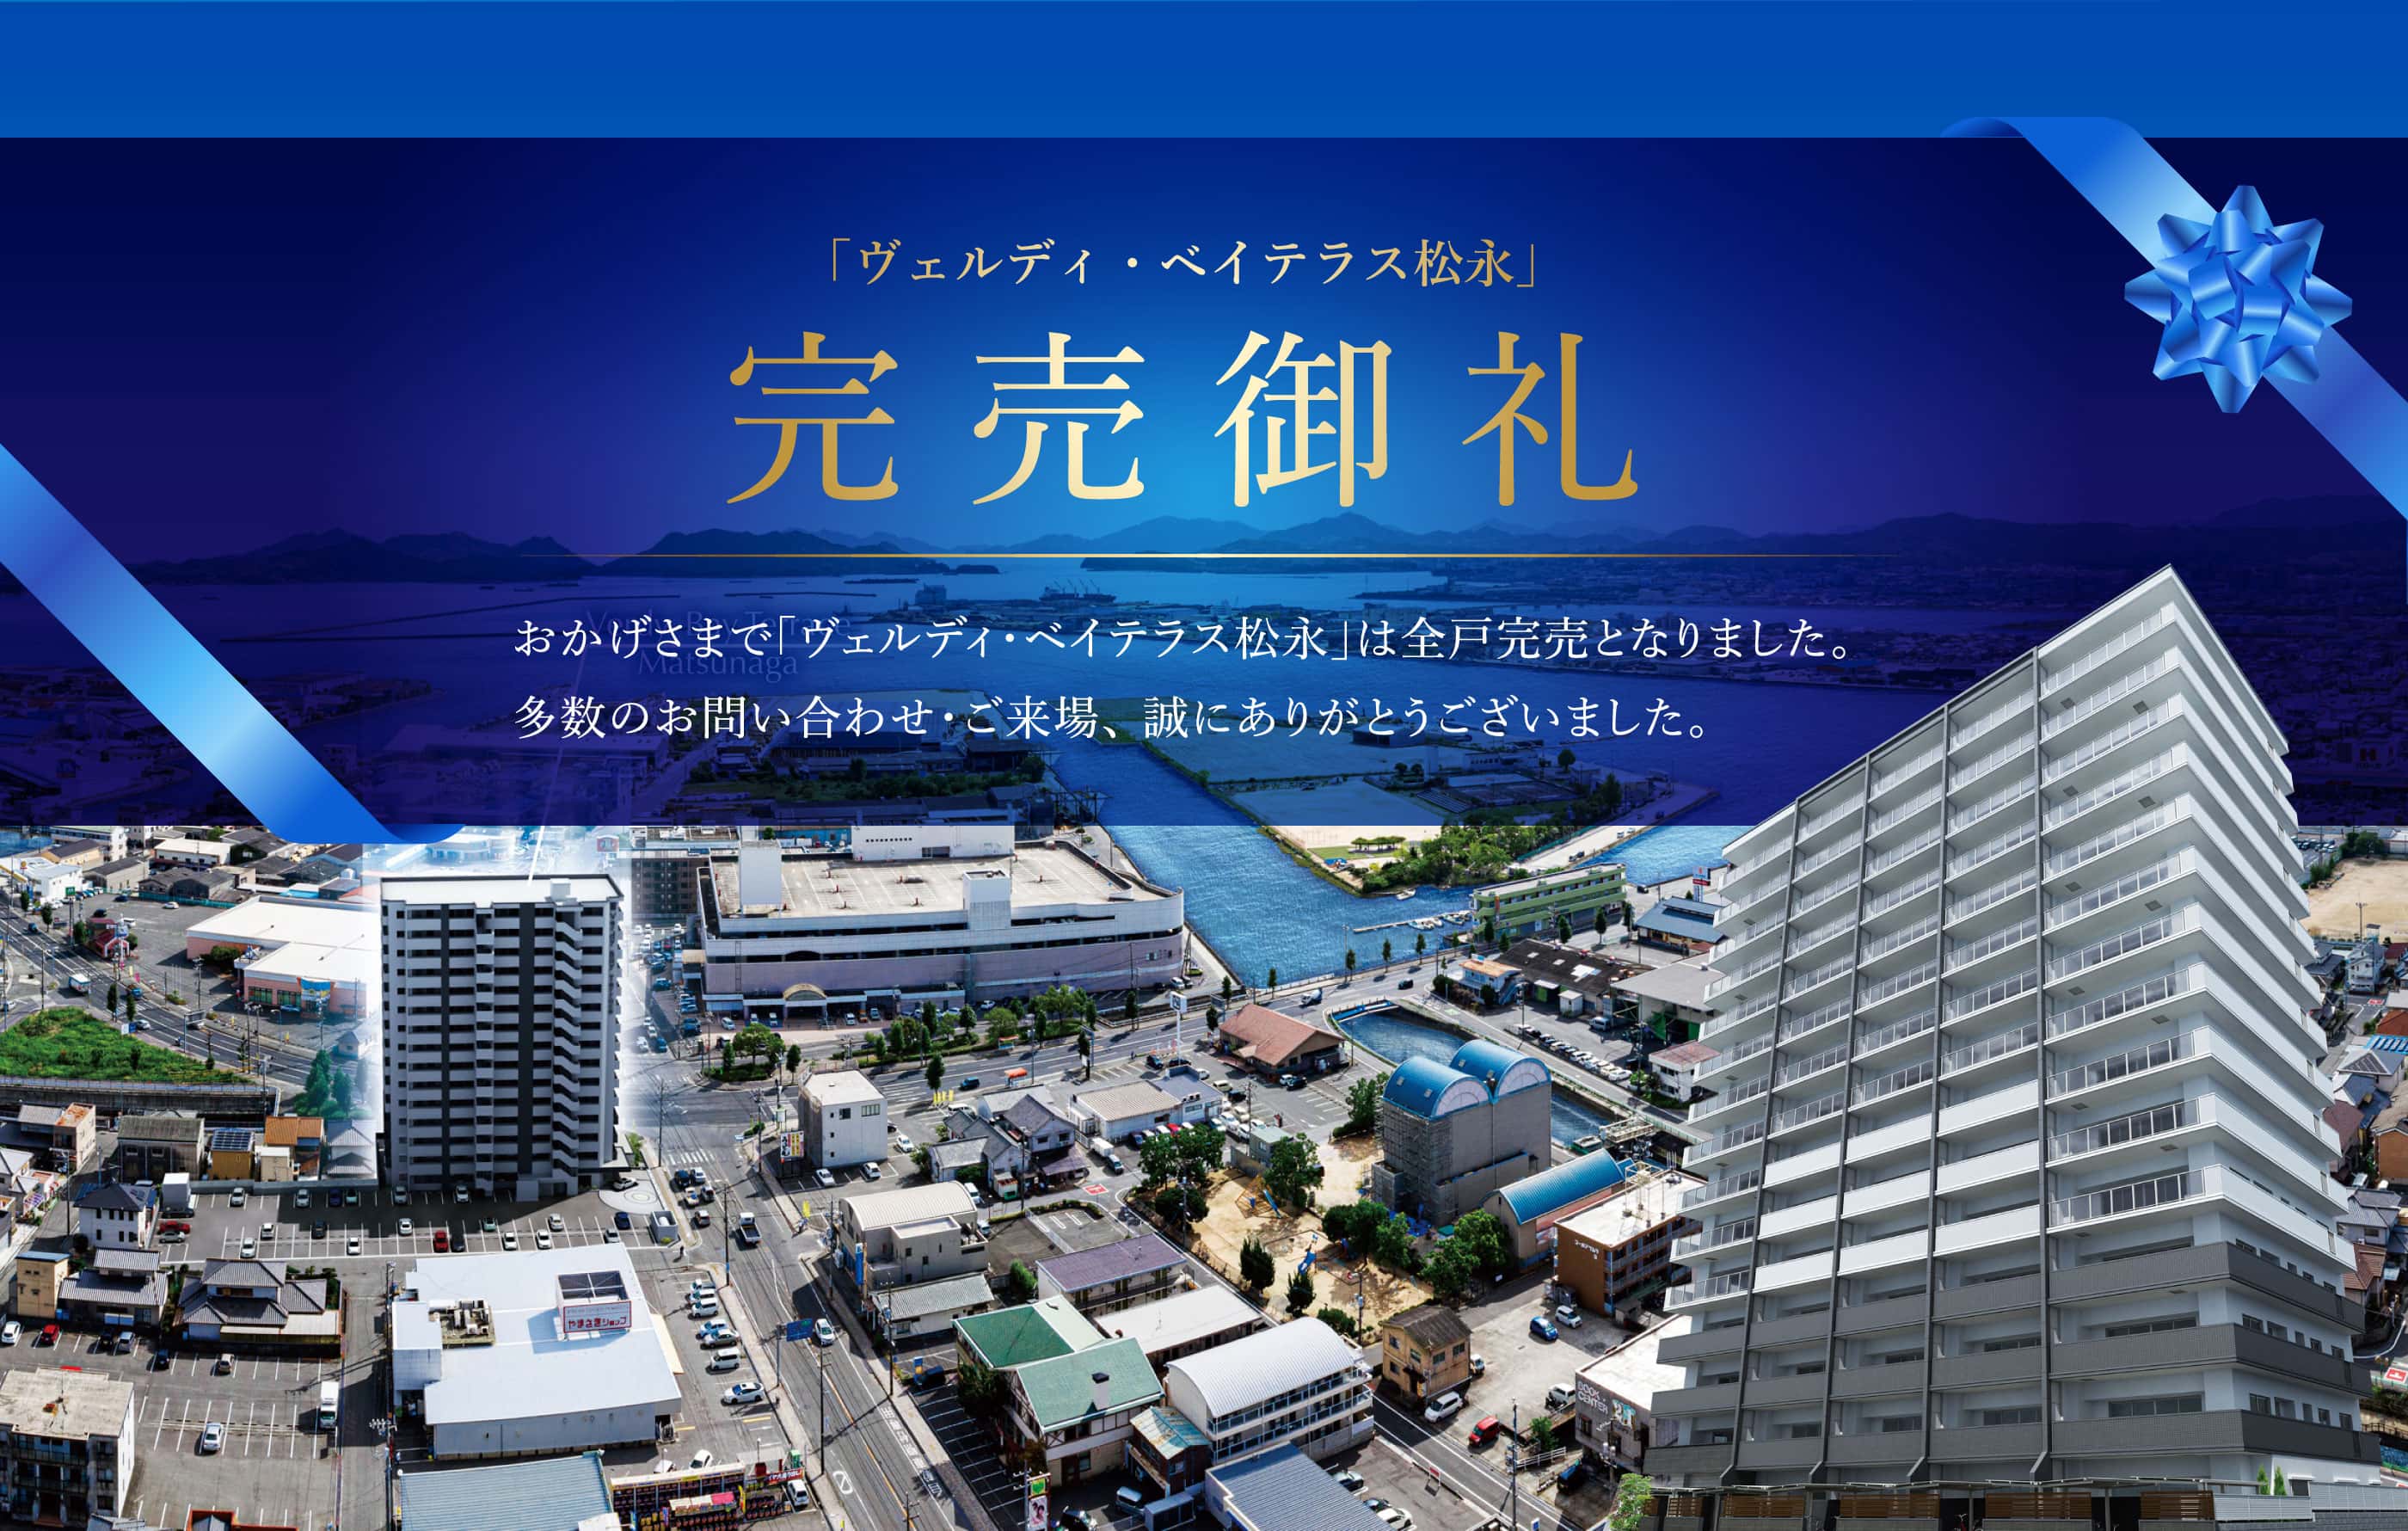 新発売 松永エリア第2弾！スーパー隣接！JR「松永」駅も徒歩圏内。松永湾を見渡す「利便の中心地」に、高層レジデンスがいよいよデビュー。